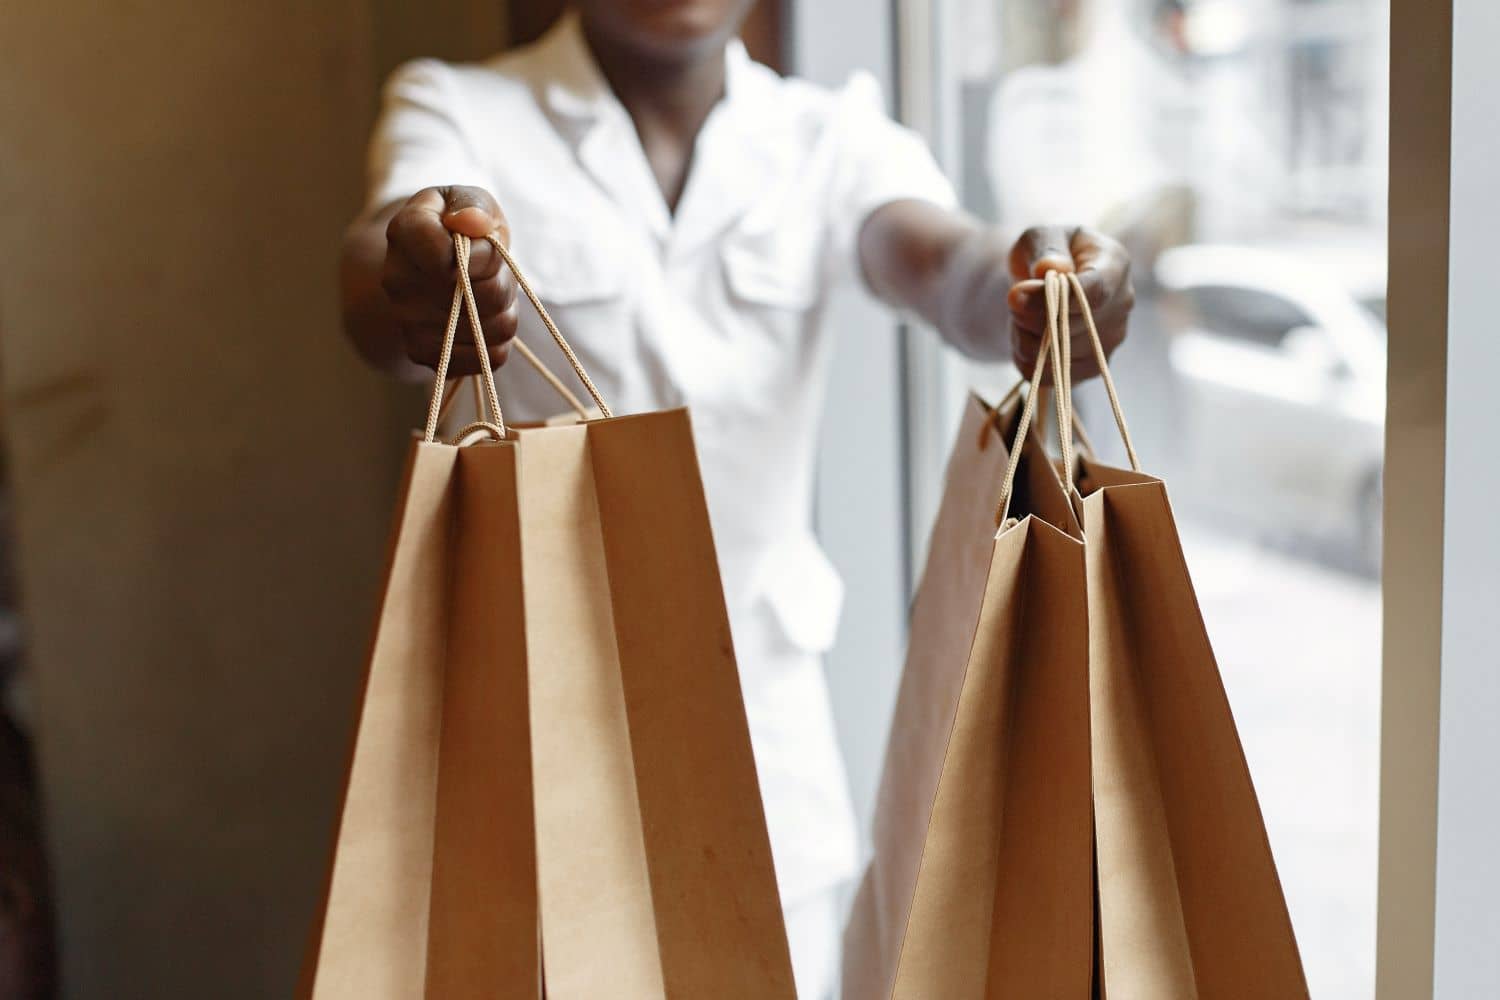 Imagem de uma pessoa segurando sacolas de compra representando desejo, necessidade e demanda